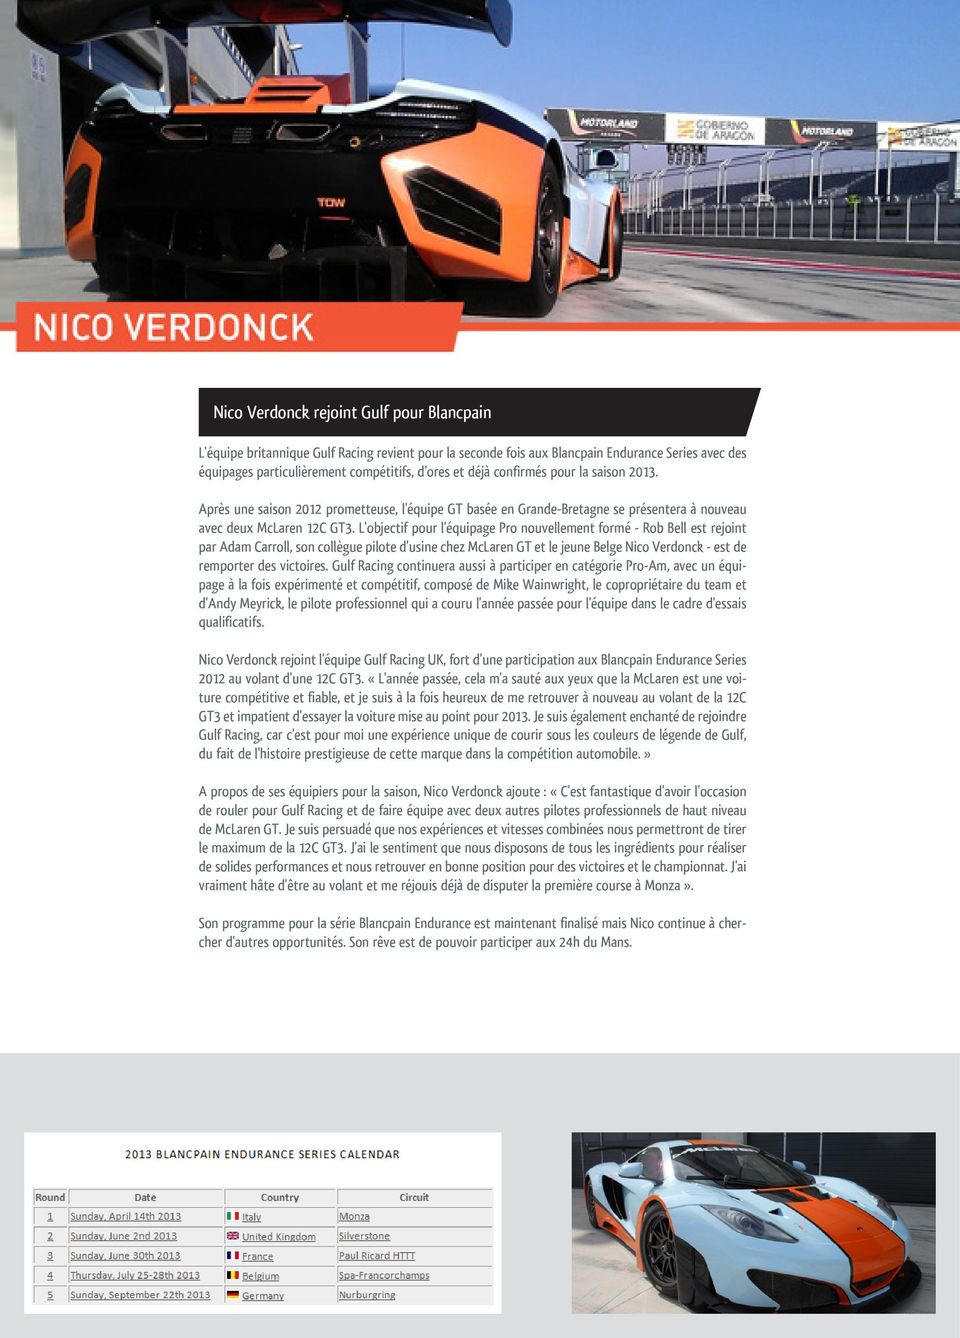 L'objectif pour l'équipage Pro nouvellement formé - Rob Bell est rejoint par Adam Carroll, son collègue pilote d'usine chez McLaren GT et le jeune Belge Nico Verdonck - est de remporter des victoires.